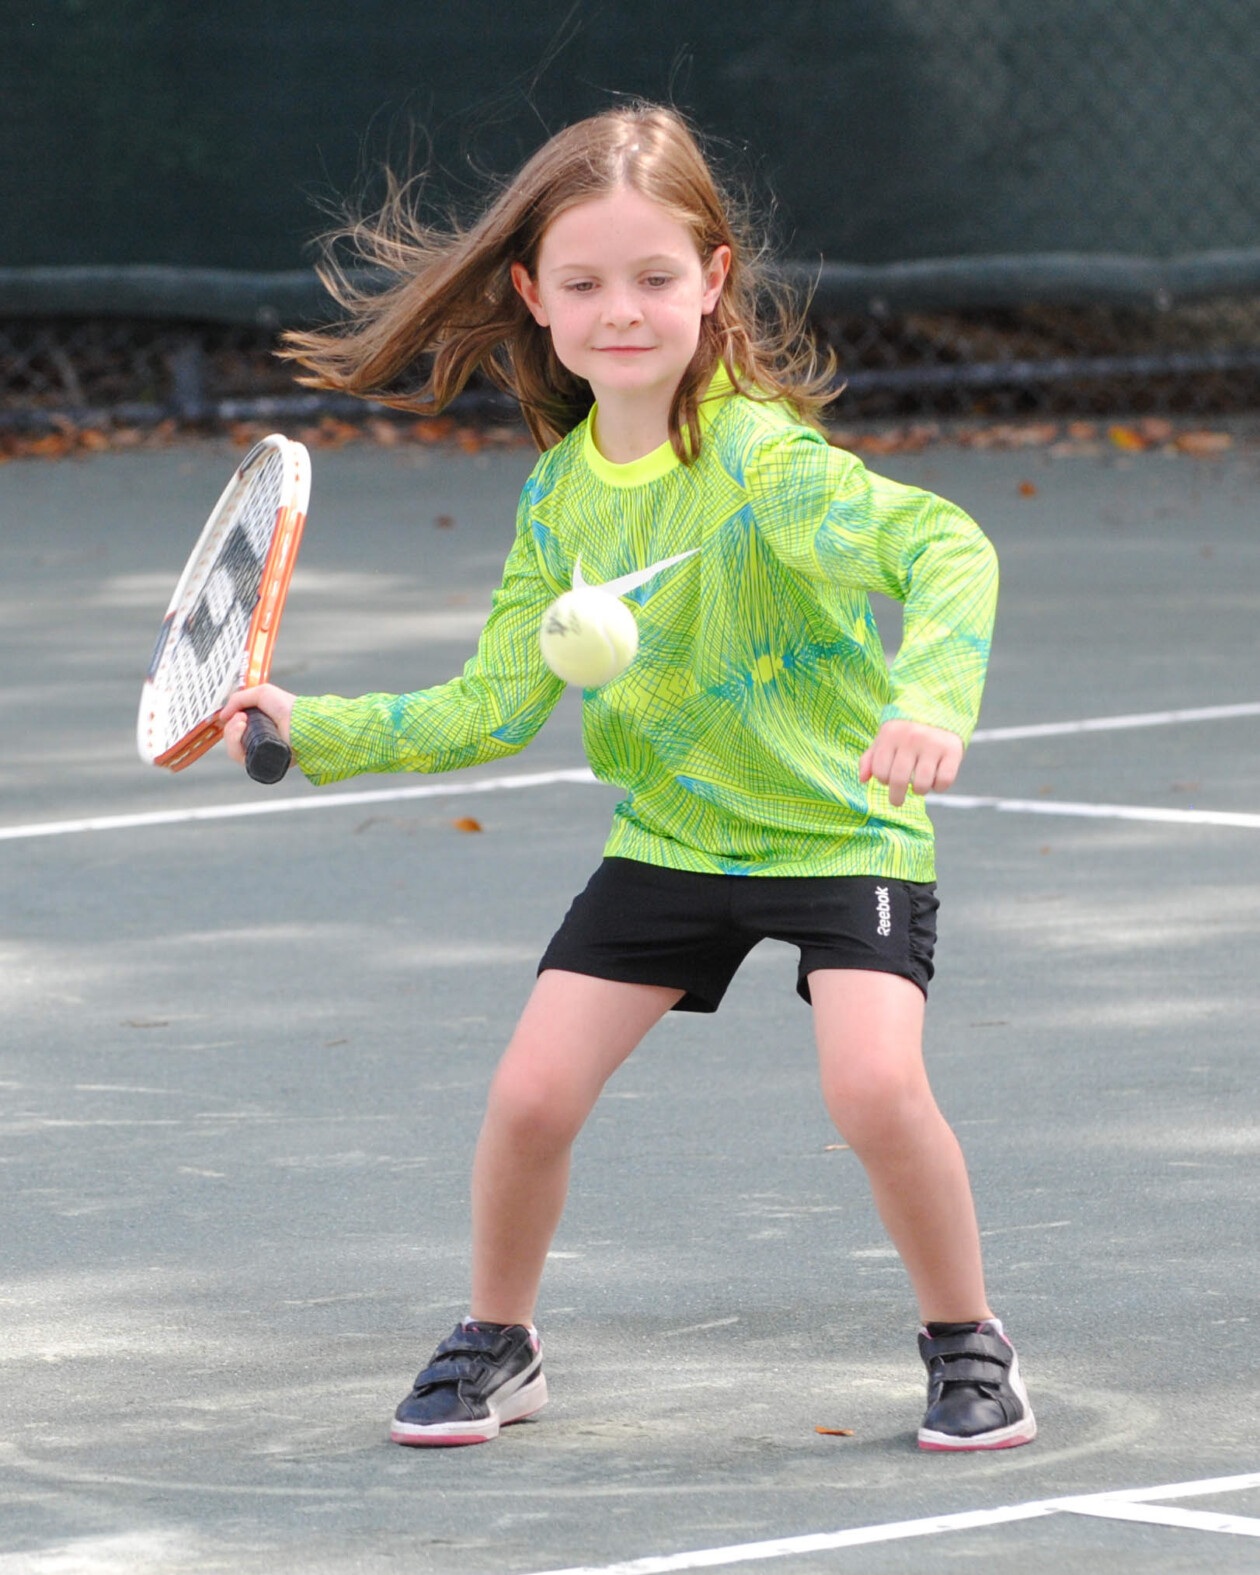 Girl playing tennis.